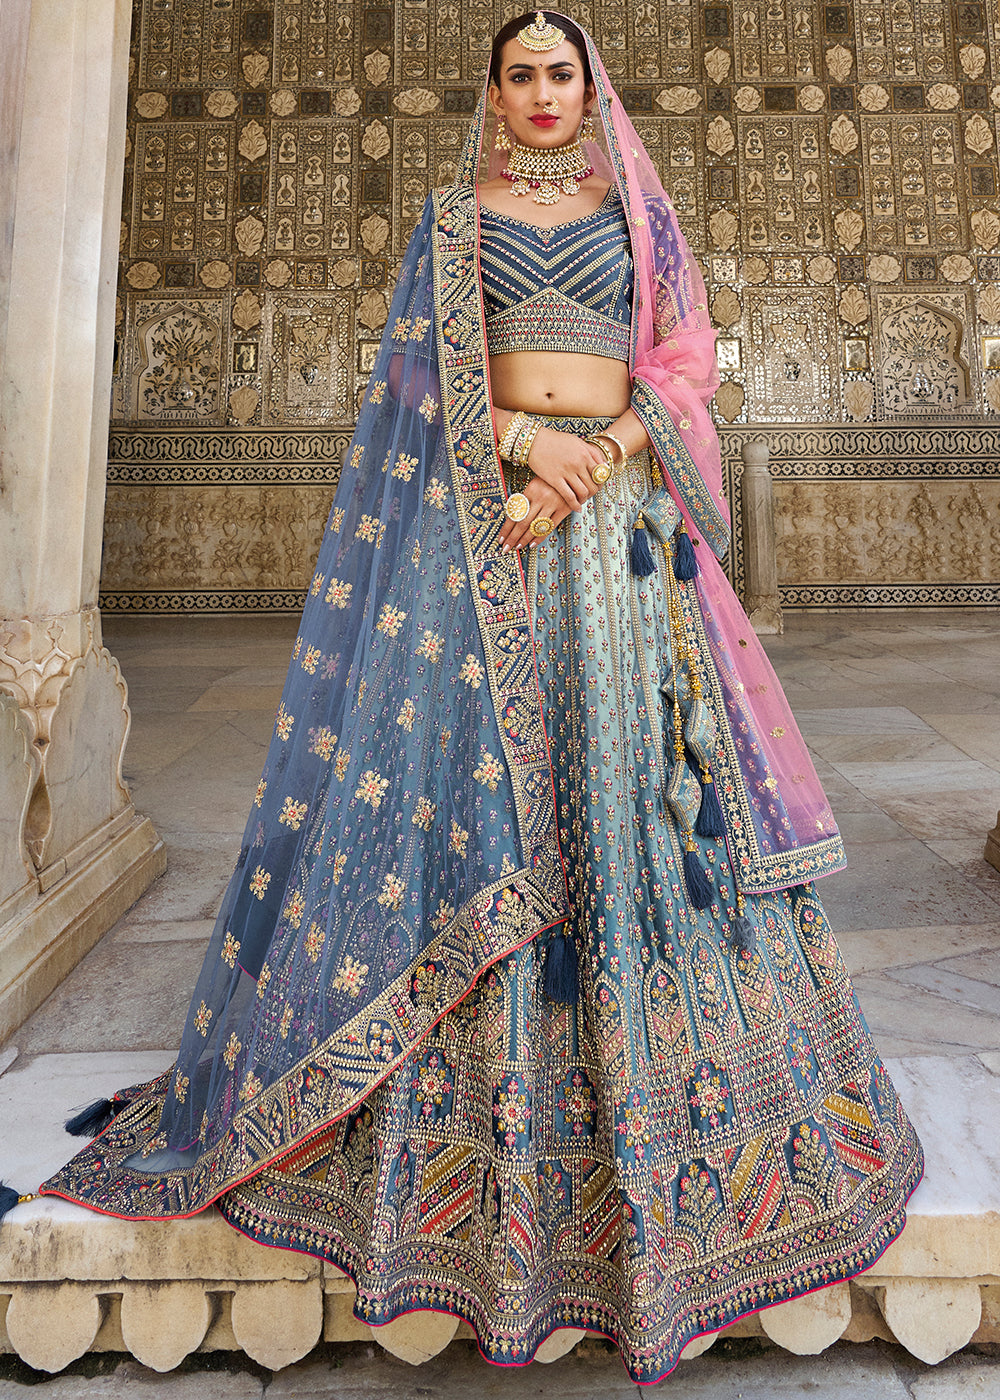 New Party Lehenga Wedding Indian Designer Bridal Bollywood ethinc Lengha  Choli | eBay